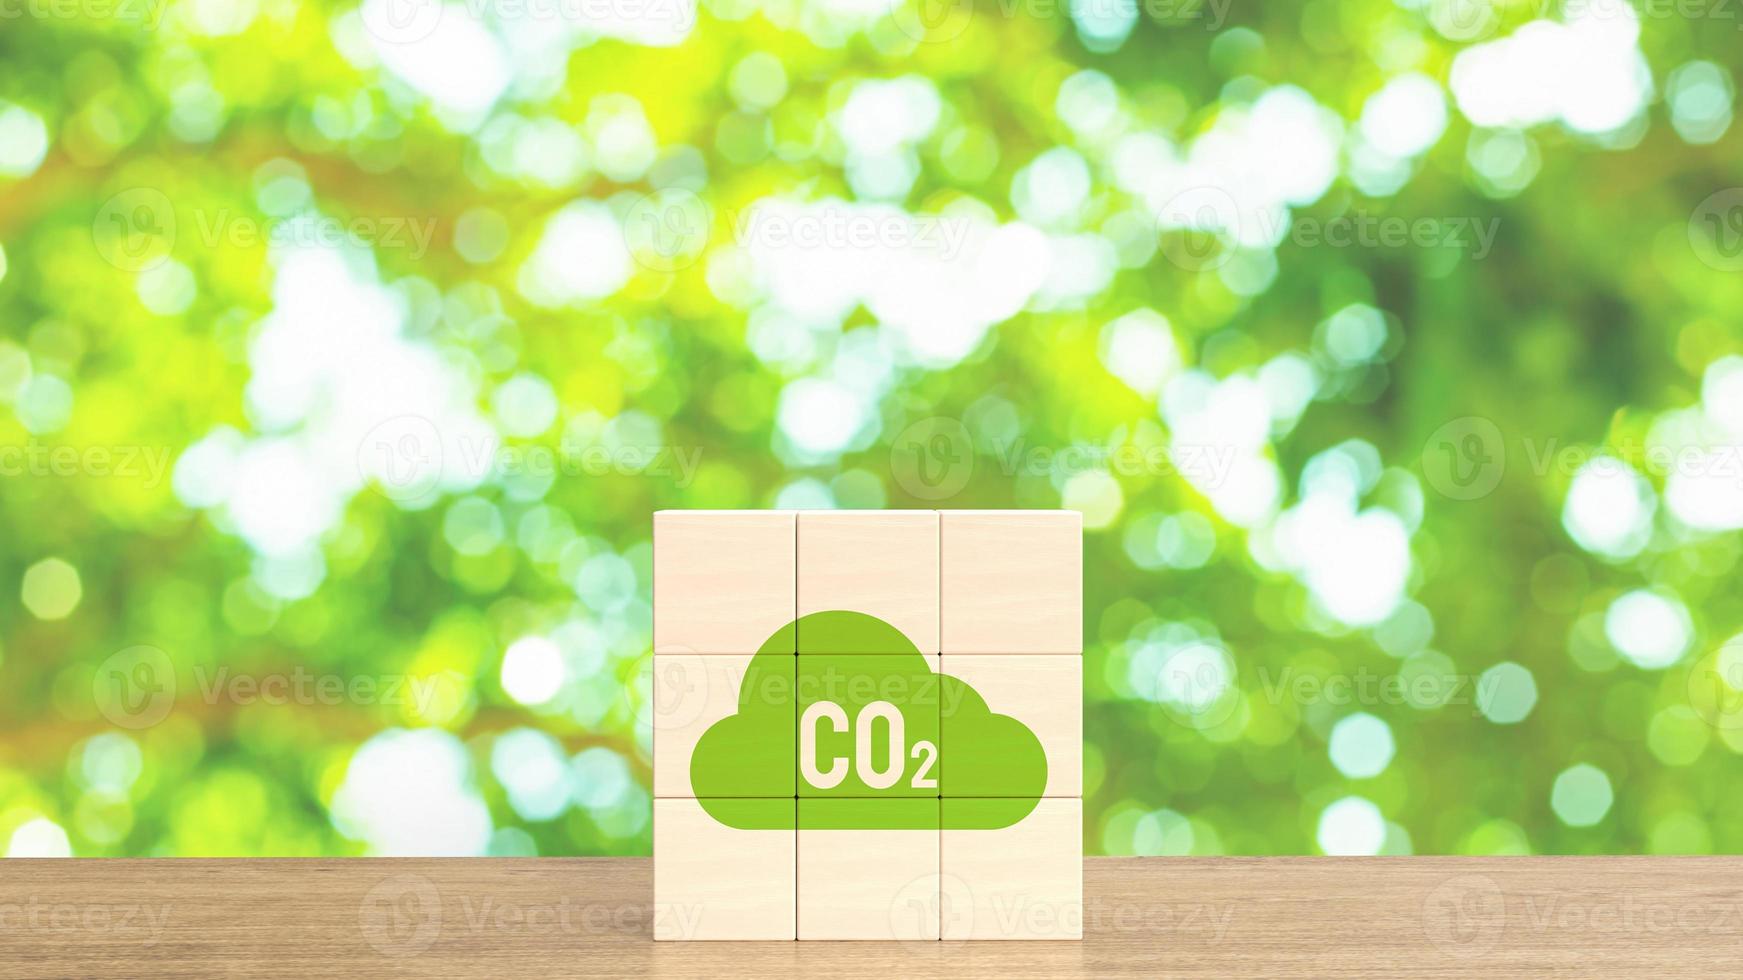 de co2 ikon på trä kub för miljö- begrepp 3d tolkning foto